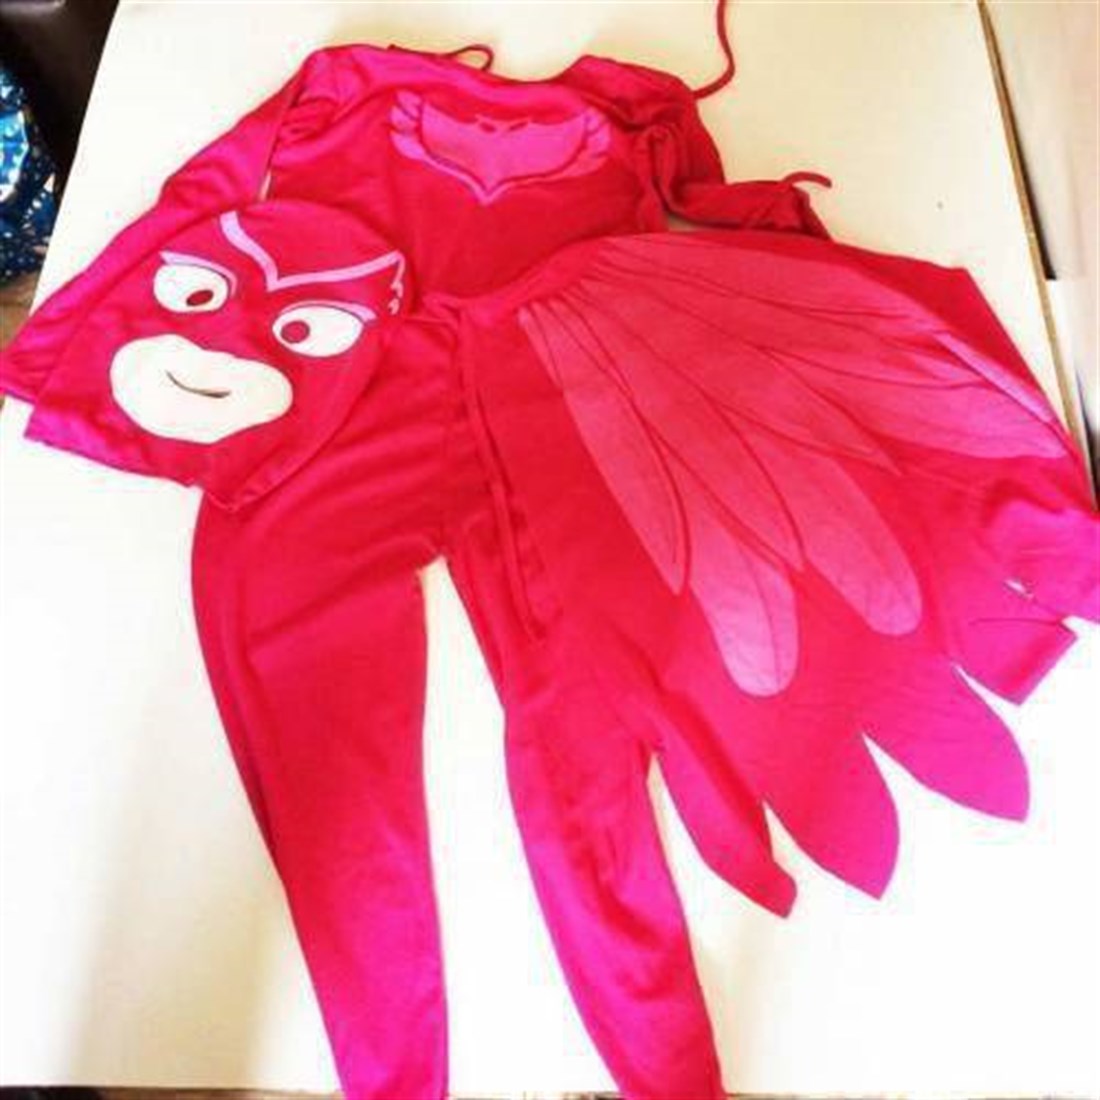 Pj Maskeliler Kostüm + 60 cm Peluş + Köpük Balon - Baykuş Kız - Owlette -  Pijamaskeliler